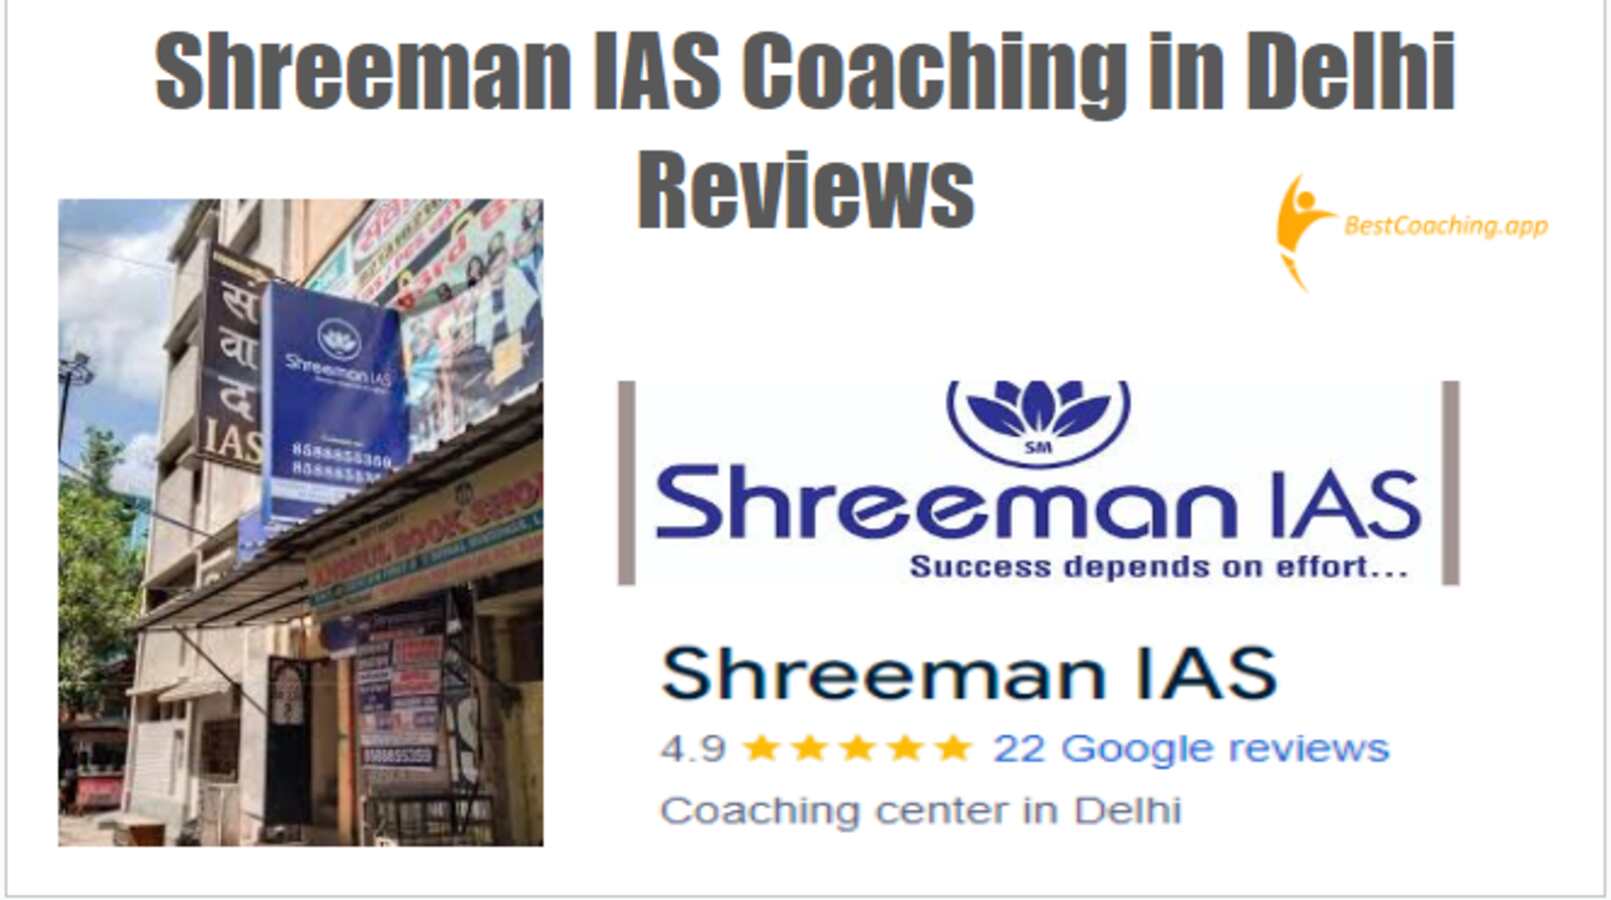 Shreeman IAS Coaching in Delhi Reviews